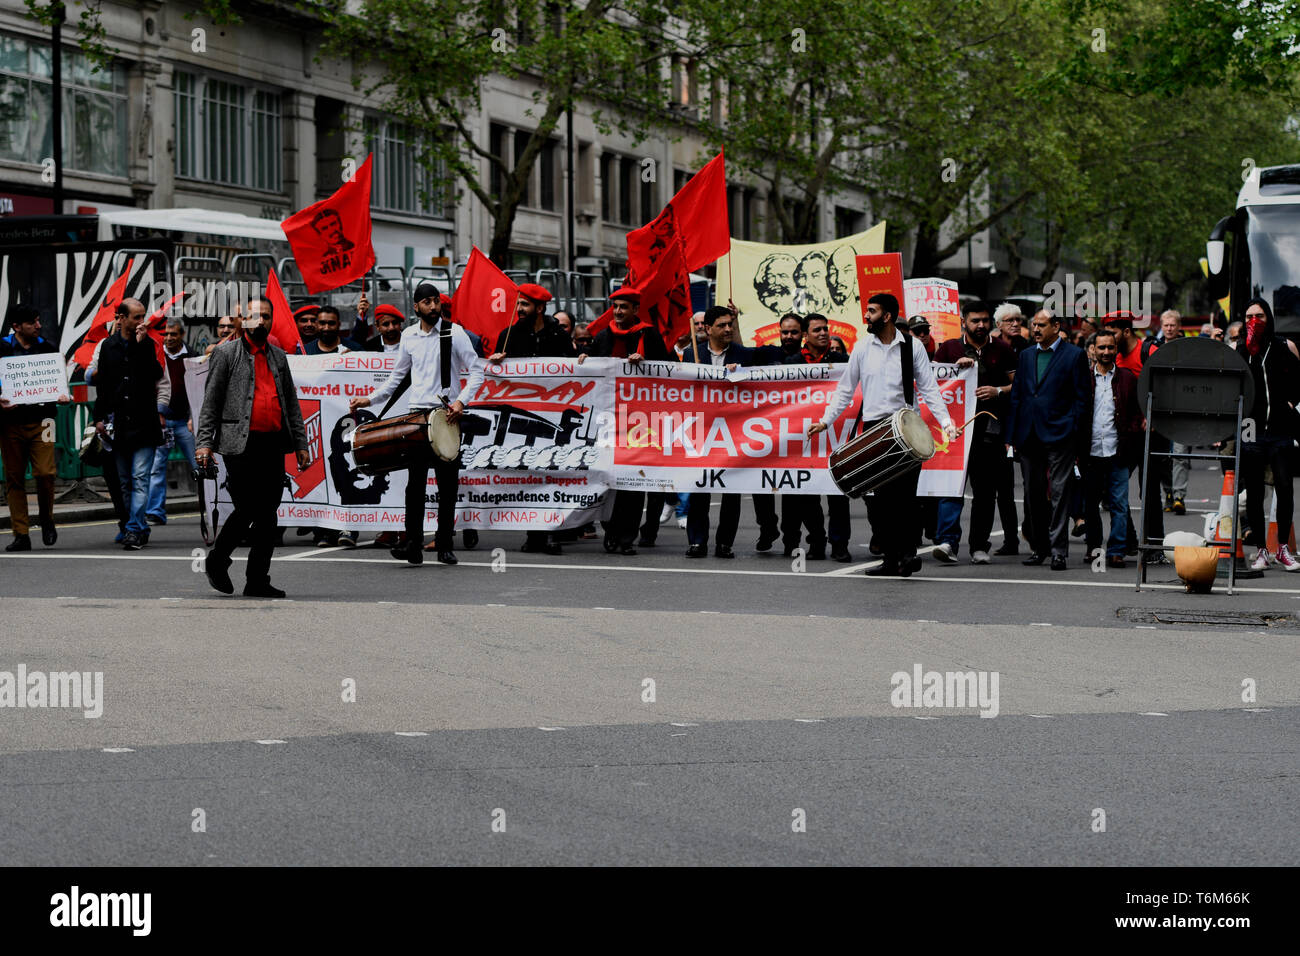 Die Demonstranten werden gesehen, Schlagzeug spielen während der Rallye. Die Demonstranten marschierten durch die Londoner Innenstadt zu einer Kundgebung auf dem Trafalgar Square anspruchsvolle Besseres Gehalt und die Rechte der Arbeitnehmer am 1. Mai. Stockfoto